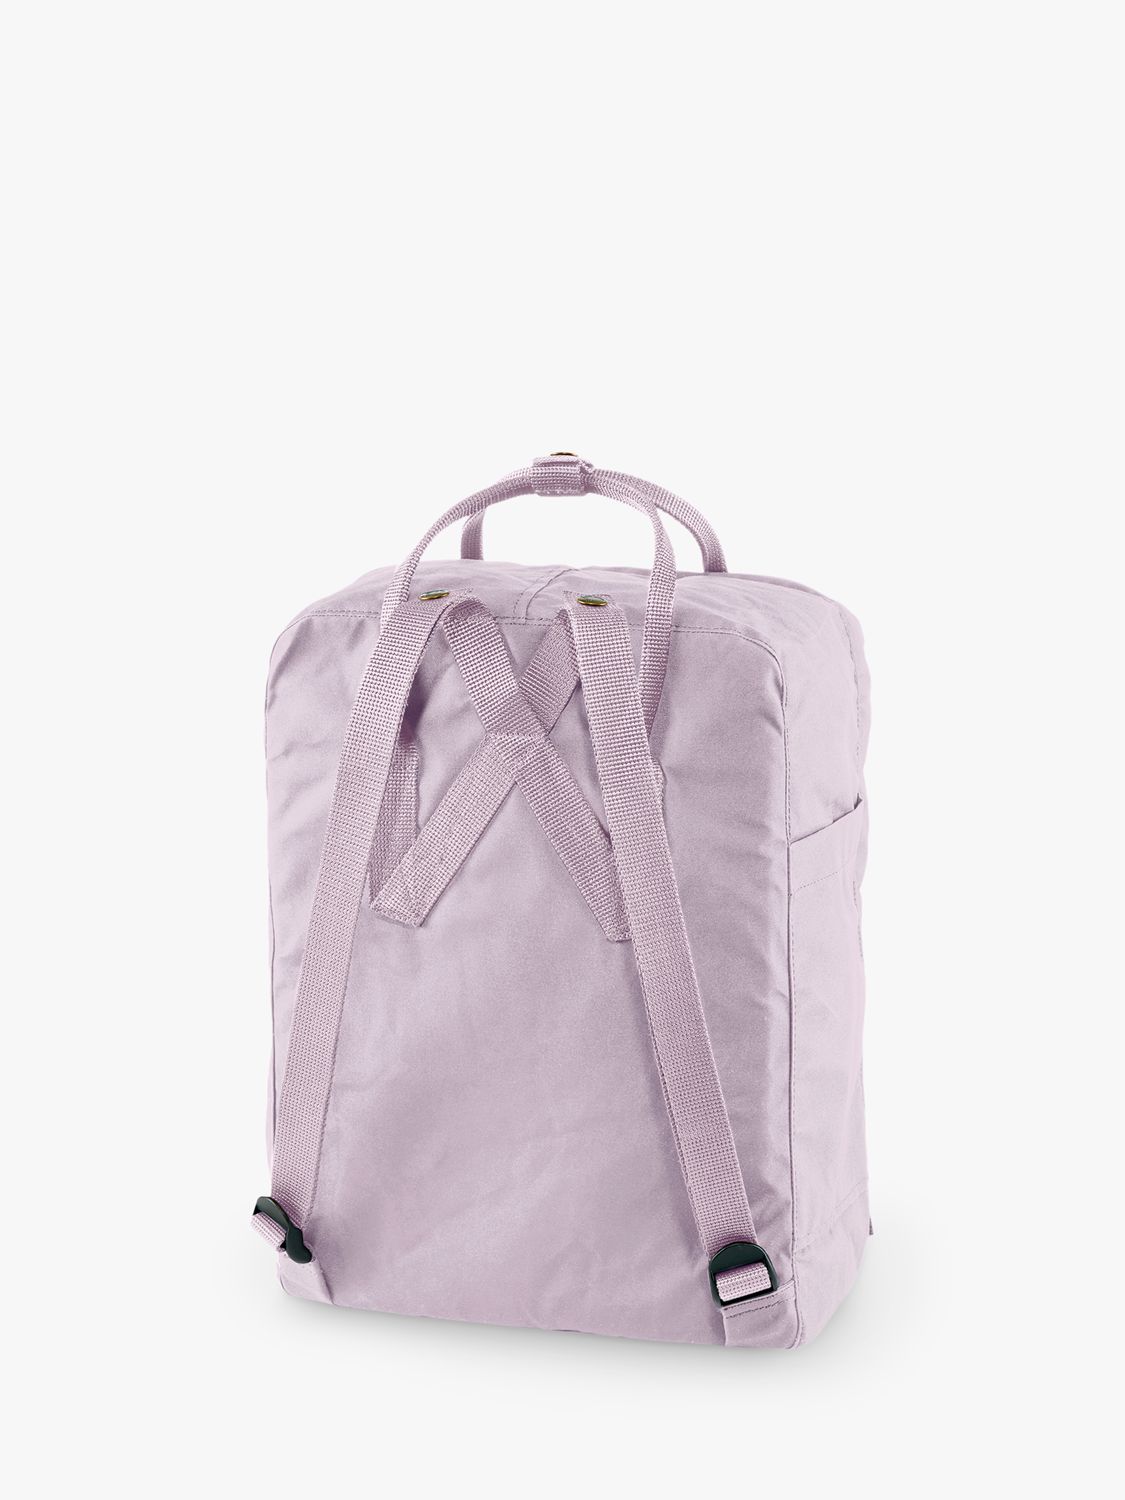 Fjällräven Kånken Classic Backpack, Lavender at John Lewis & Partners